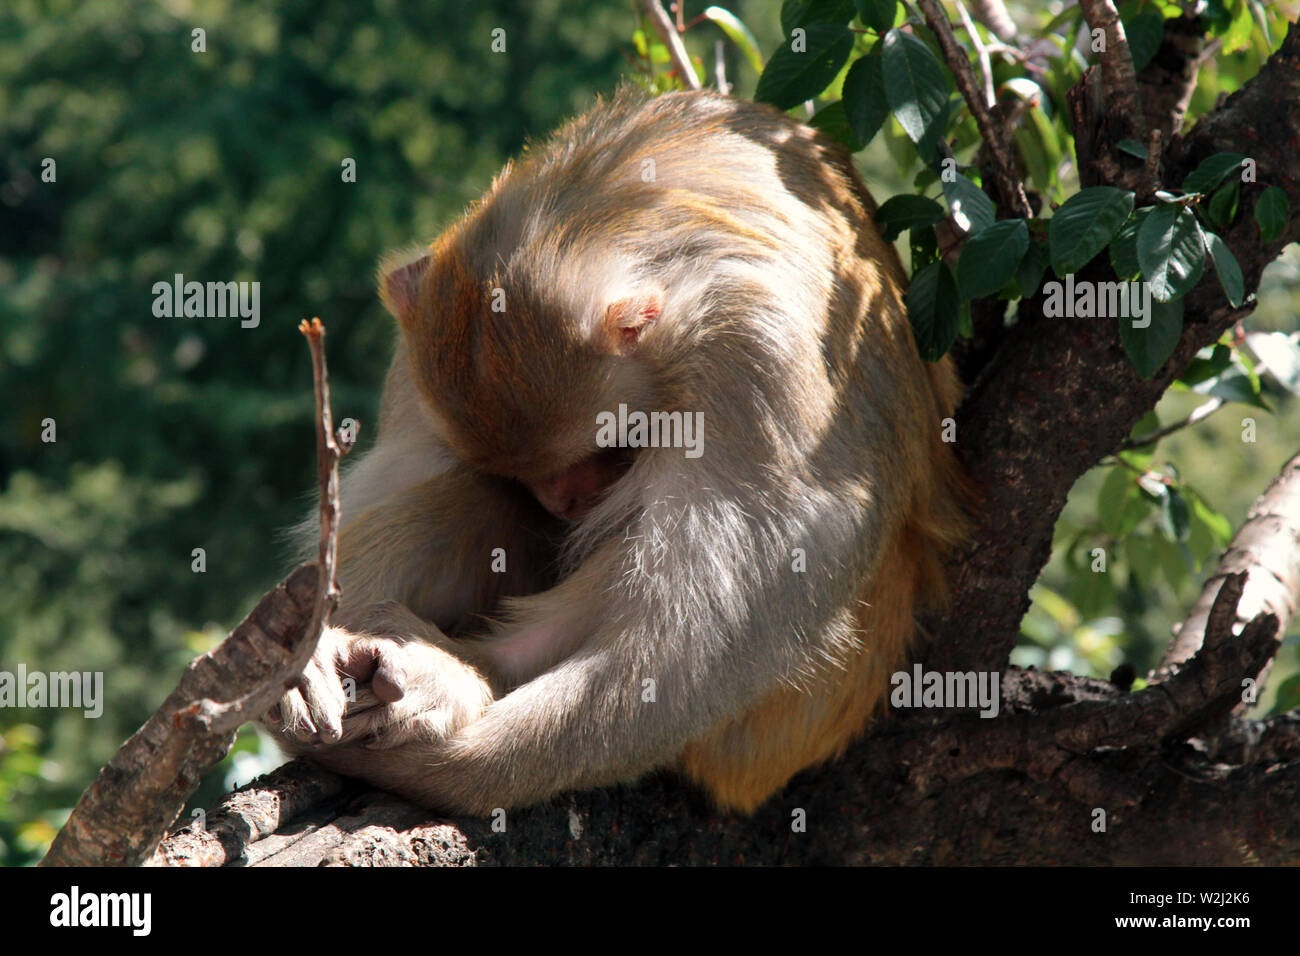 Este macacos rhesus rechazados (HID) de la lente. La lente se asemeja a un gran depredador de animales ojo. Etología, comportamiento animal Foto de stock